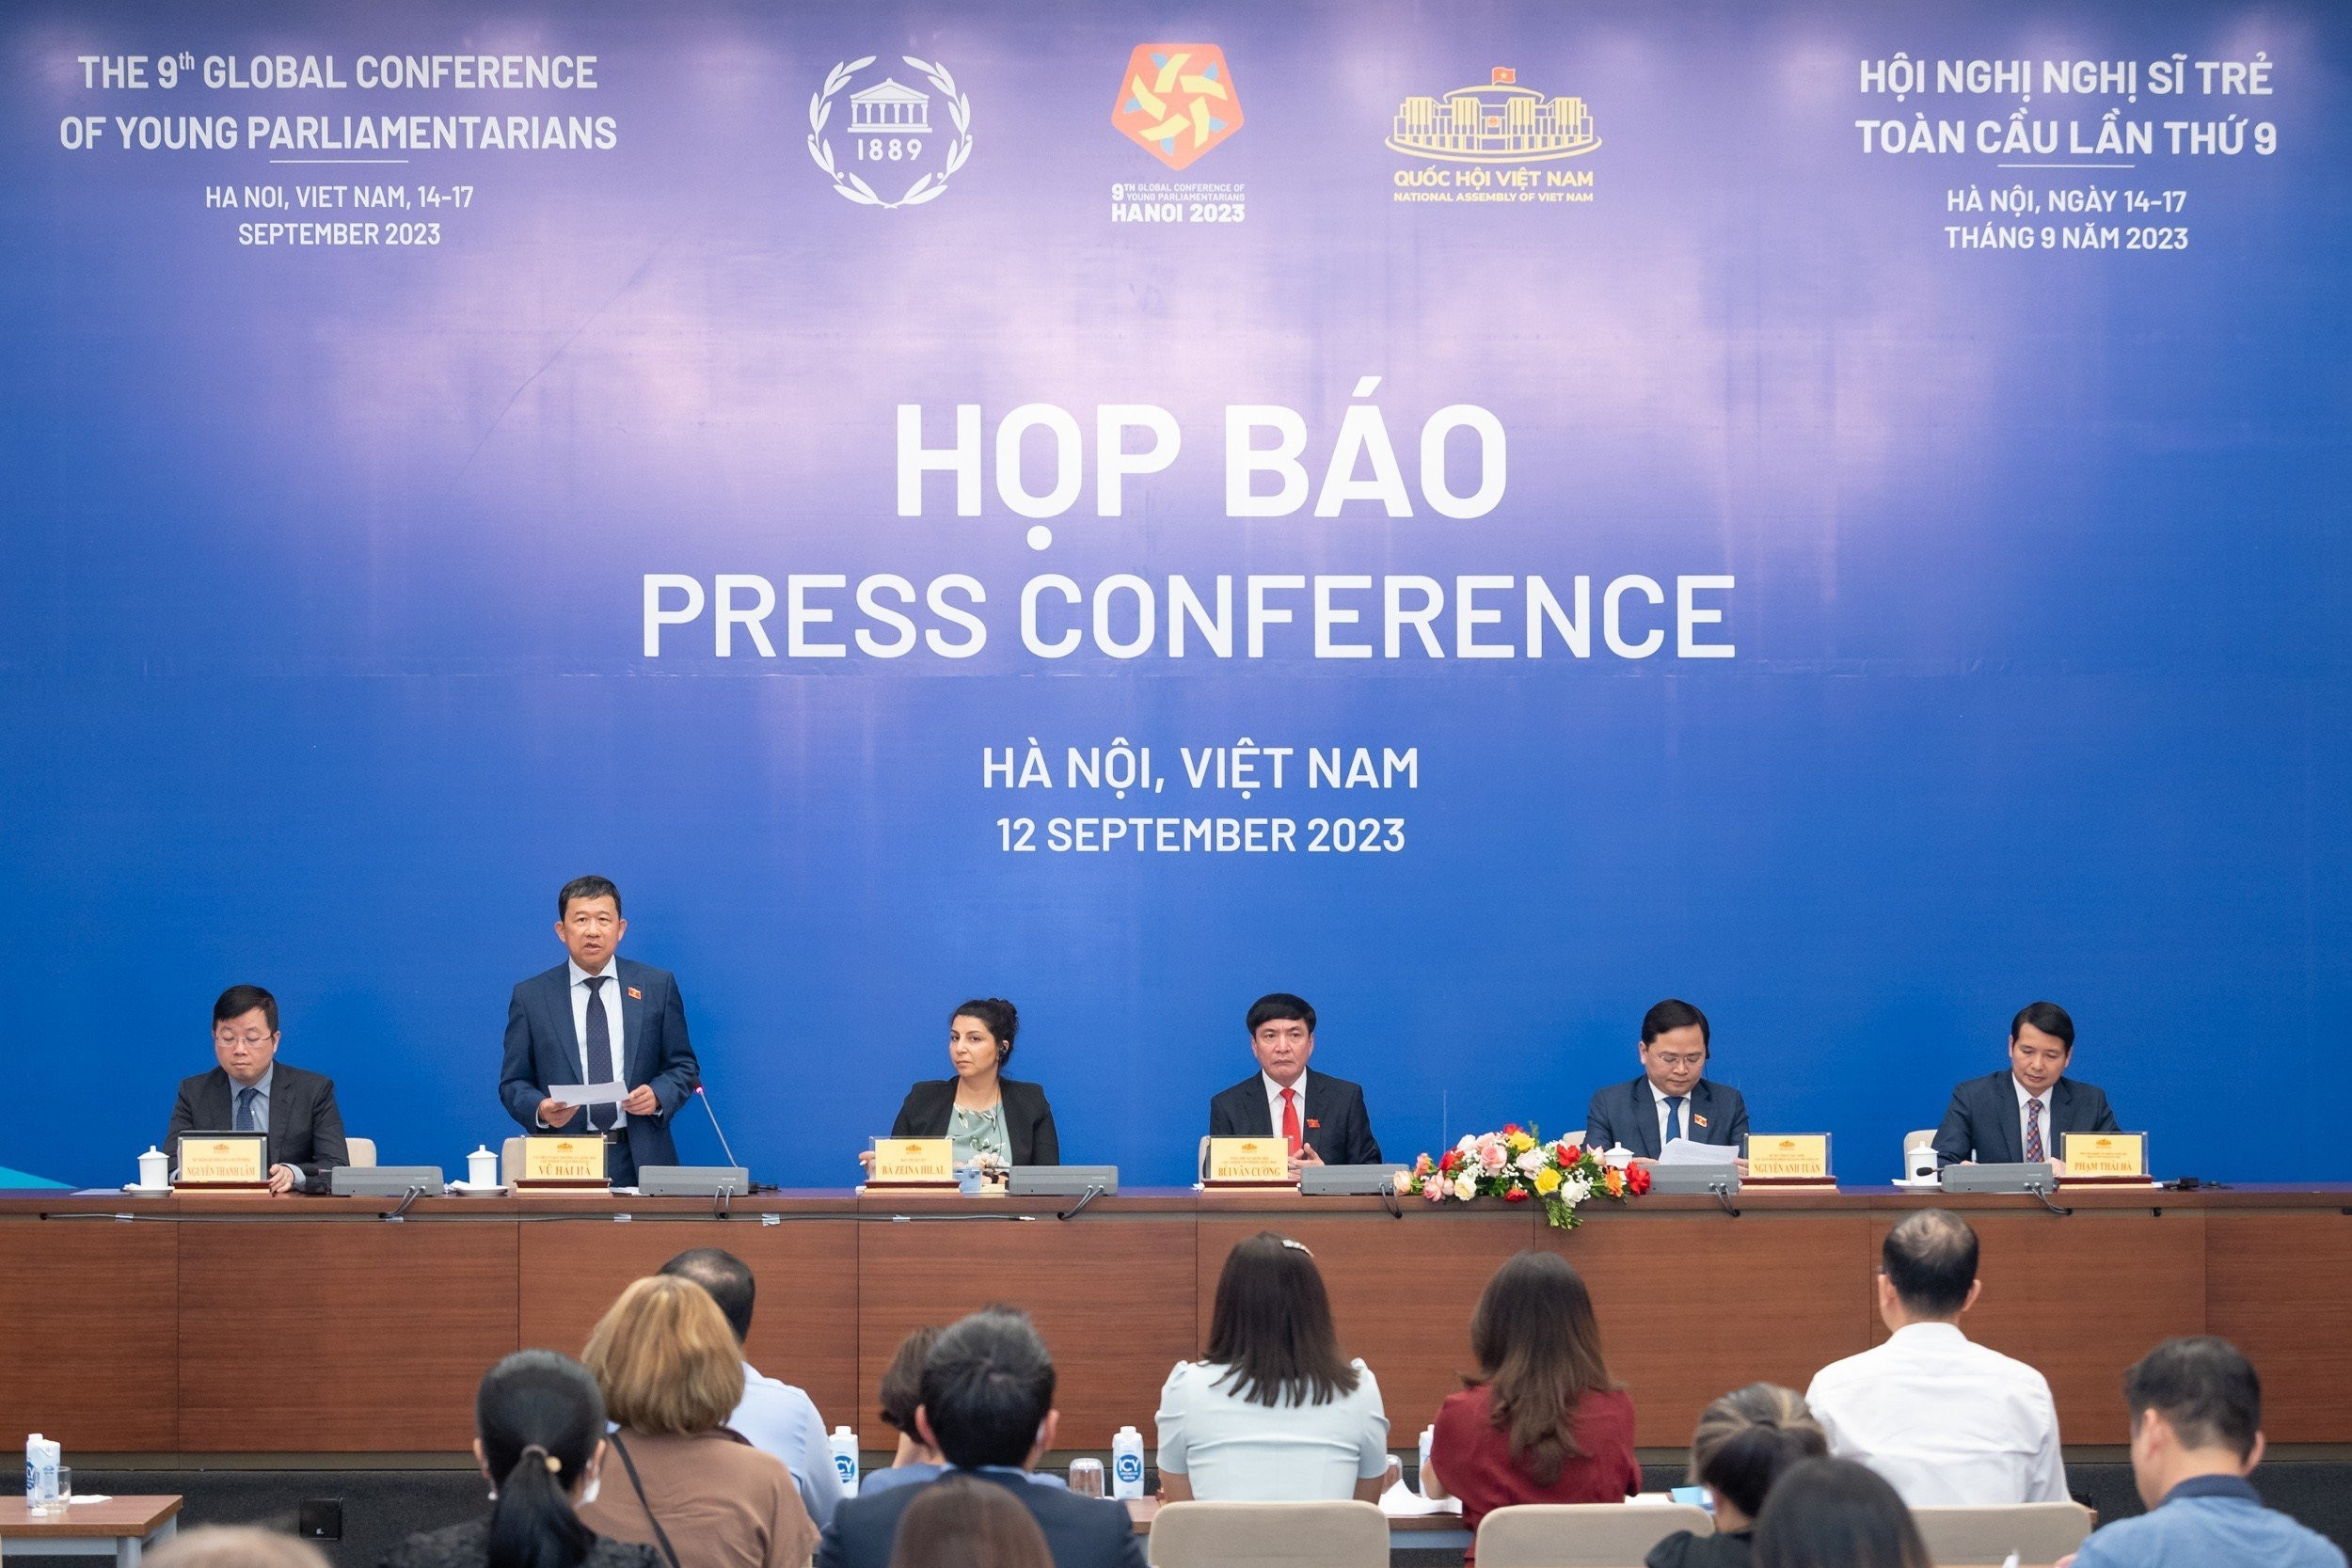 300 nghị sĩ từ nhiều nước dự Hội nghị nghị sĩ trẻ toàn cầu ở Việt Nam